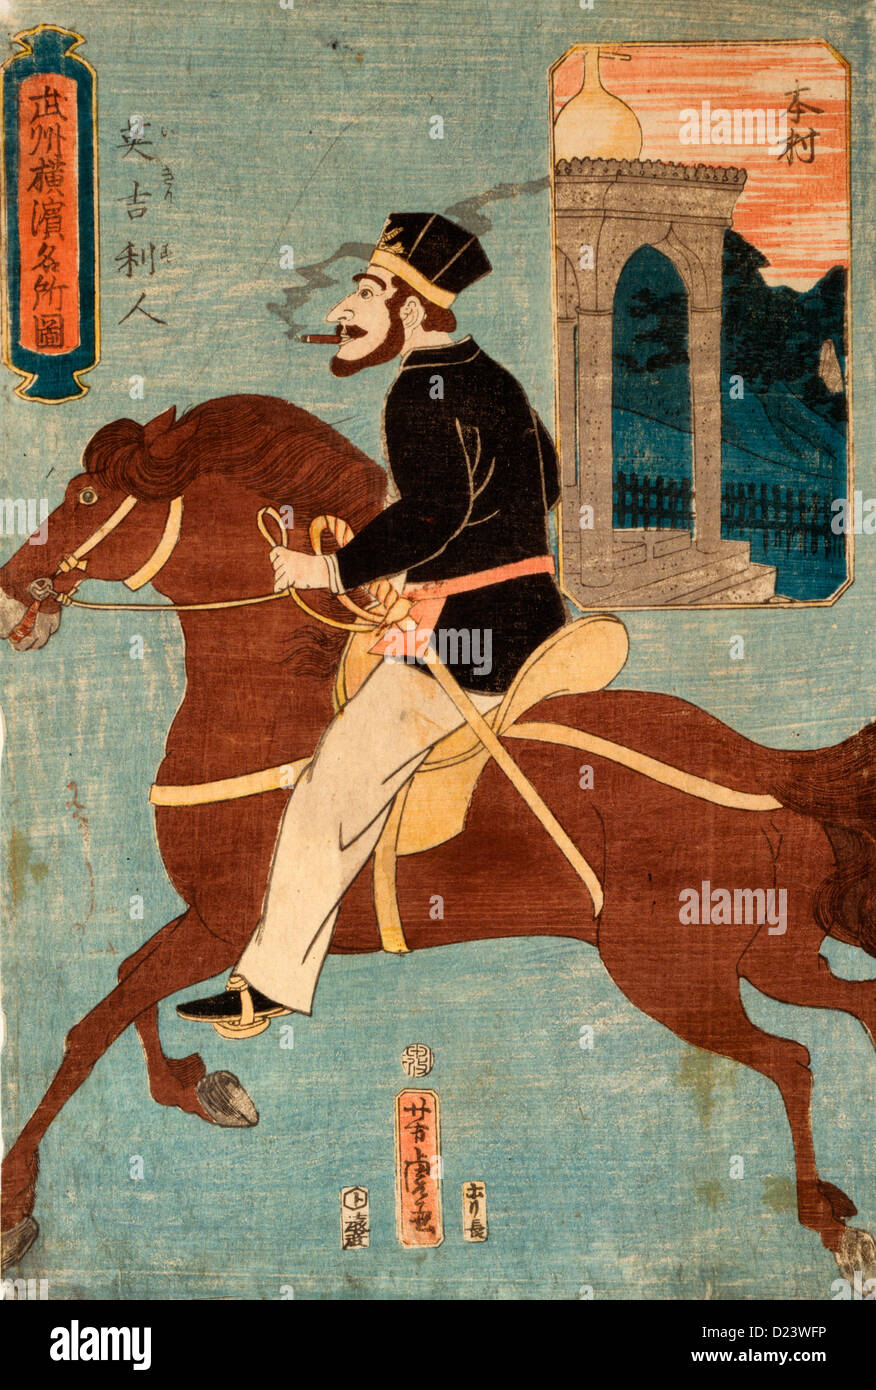 Imprimer japonais montre un anglais fumer un cigare ou cigarette alors que l'équitation. Petite illustration en arrière-plan montrant un temple, circa 1860 Banque D'Images